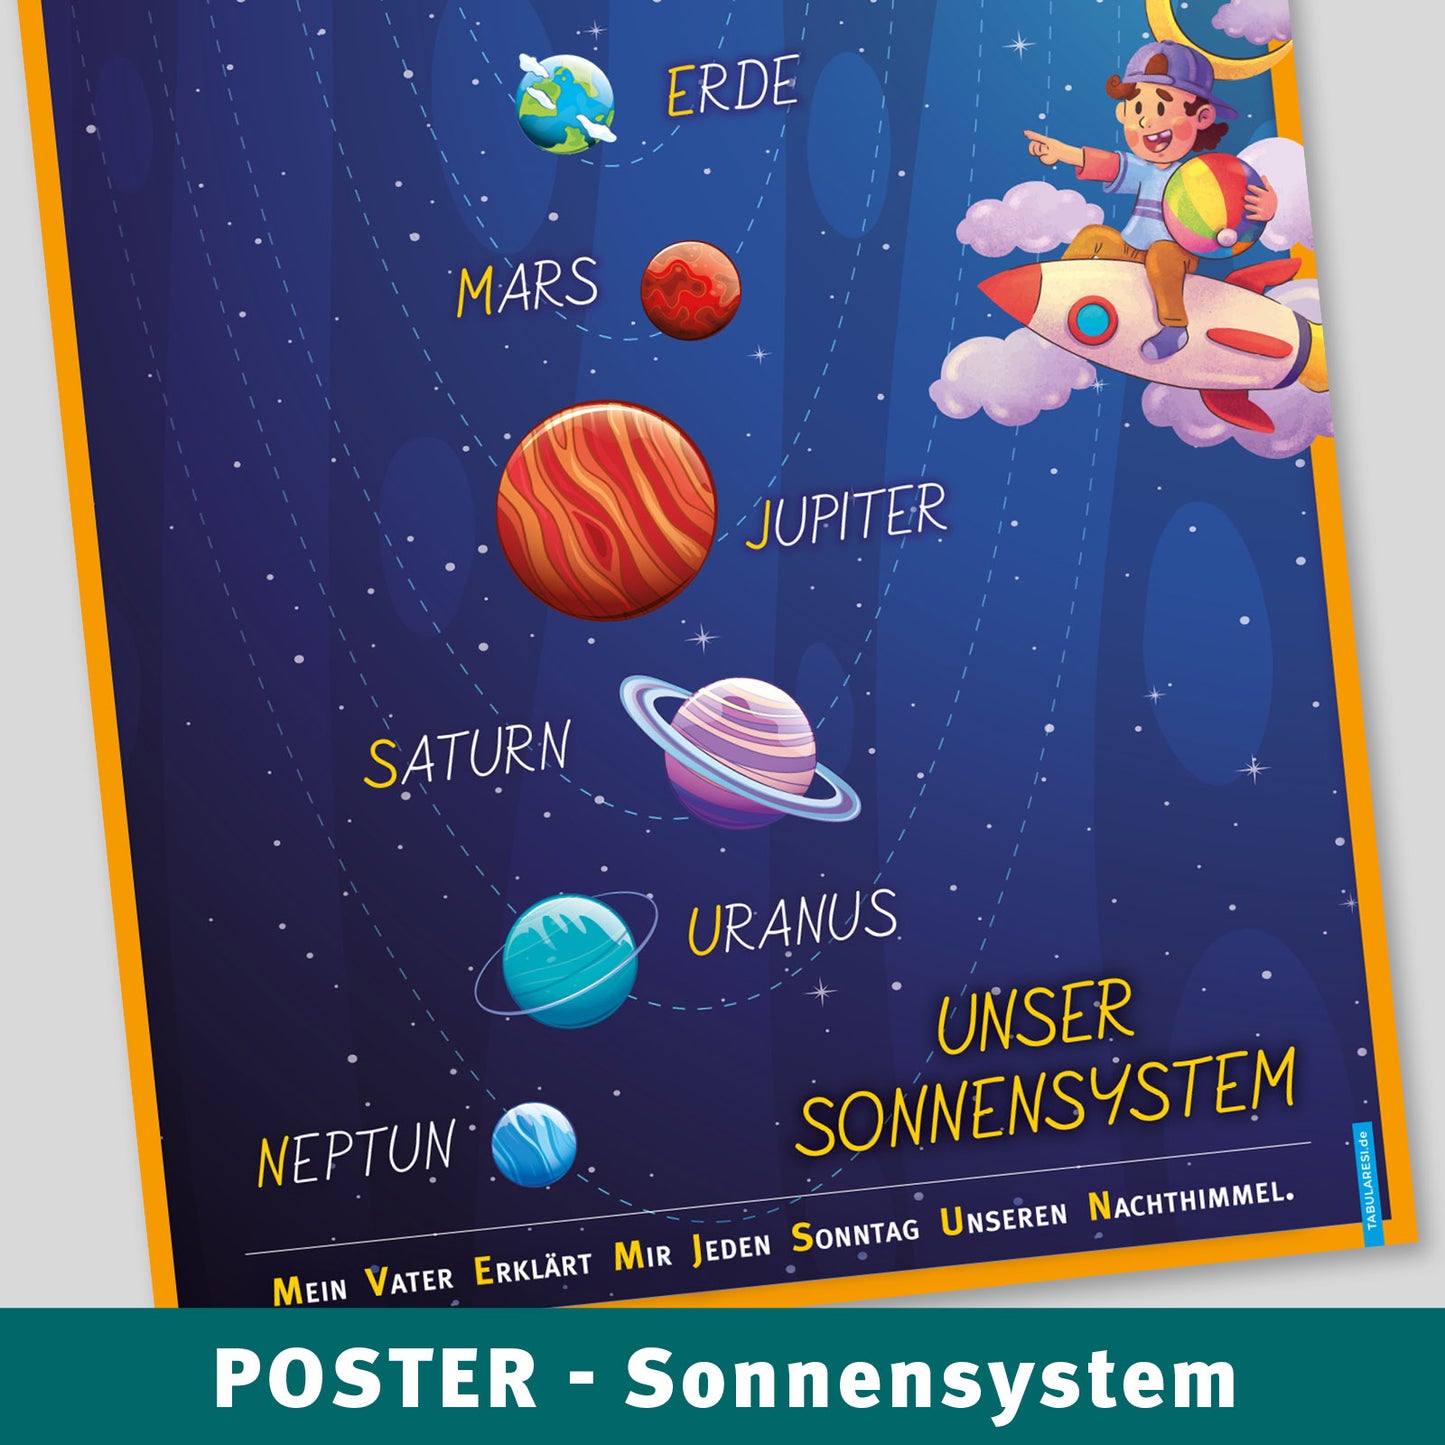 A2 Poster - Sonnensystem Planeten